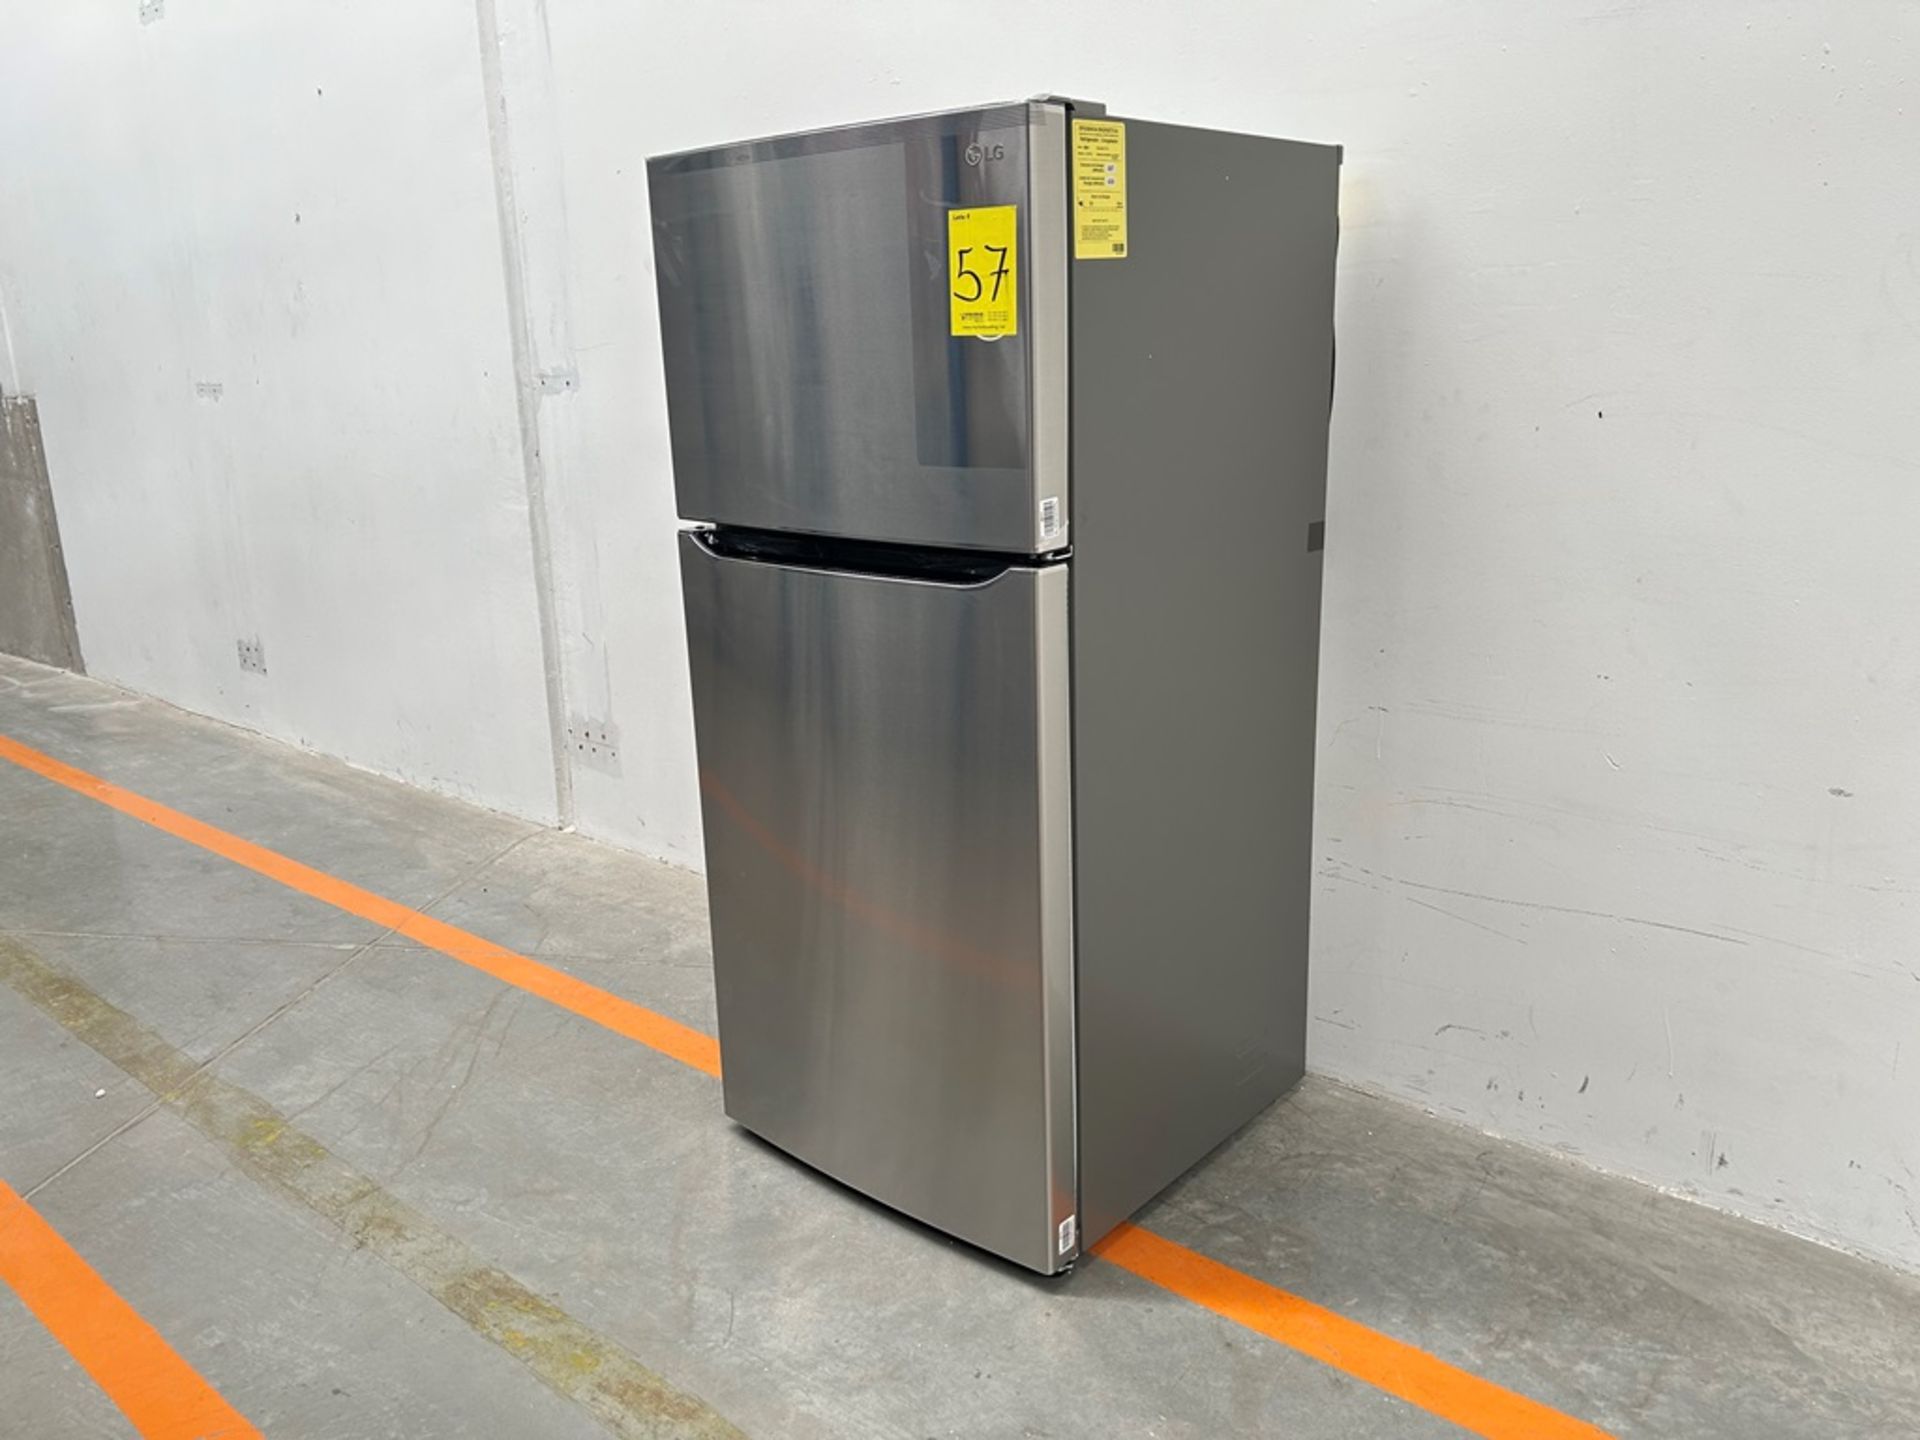 (NUEVO) Refrigerador Marca LG, Modelo LT57BPSX, Serie 2D689, Color GRIS - Image 2 of 7